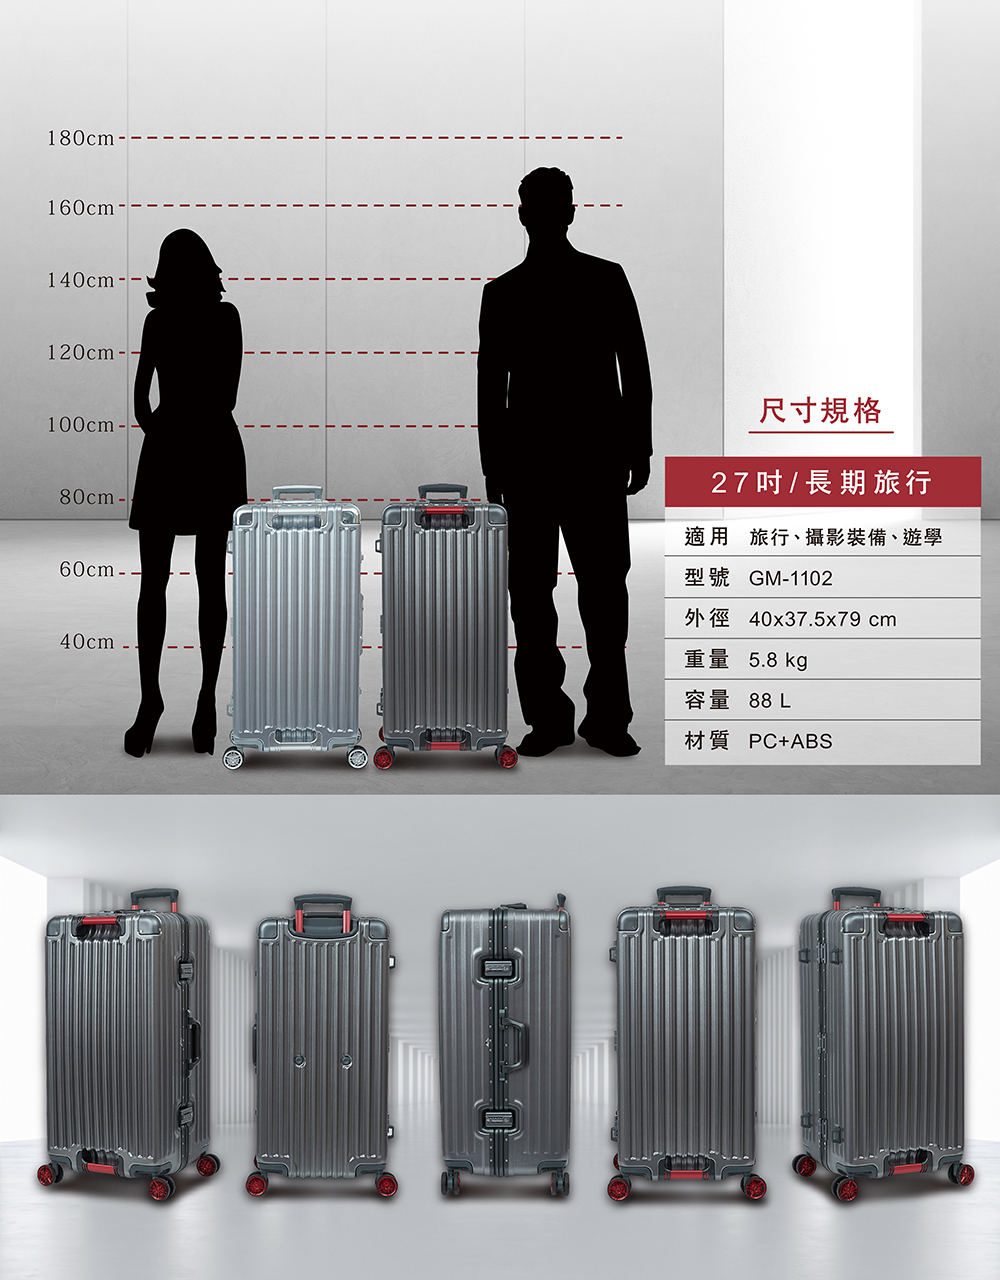 gripmaster-luggage-gm-1102-27-P4.jpg